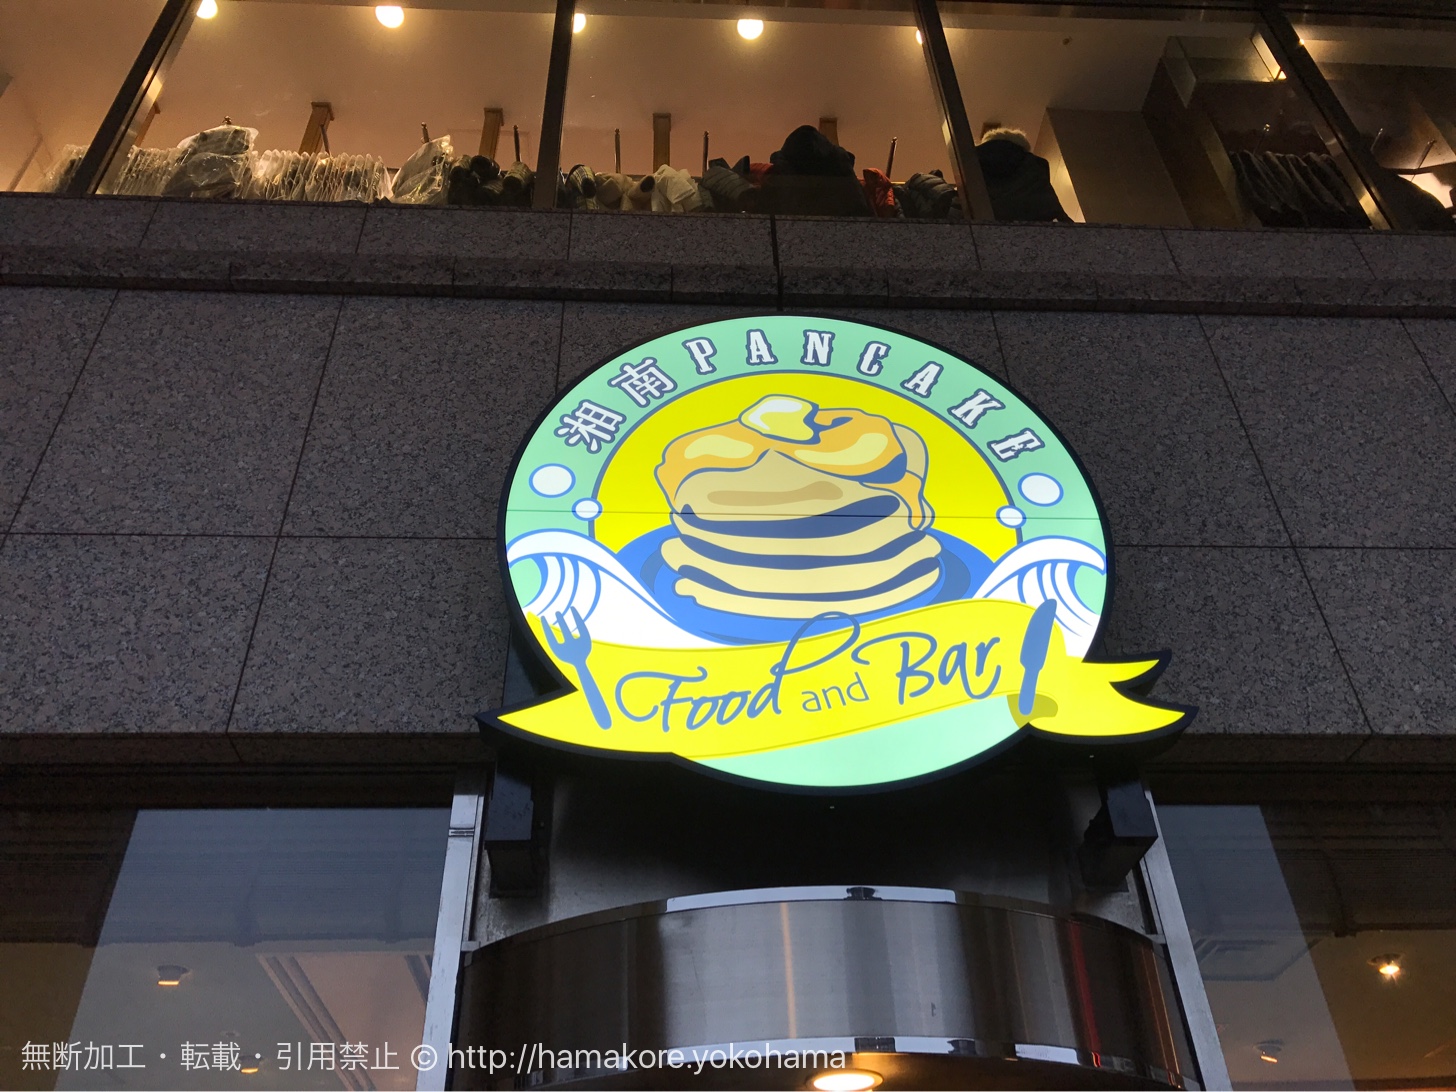 横浜みなとみらい 湘南パンケーキ で苺たっぷりパンケーキ 場所がわかりにくいので要確認 はまこれ横浜